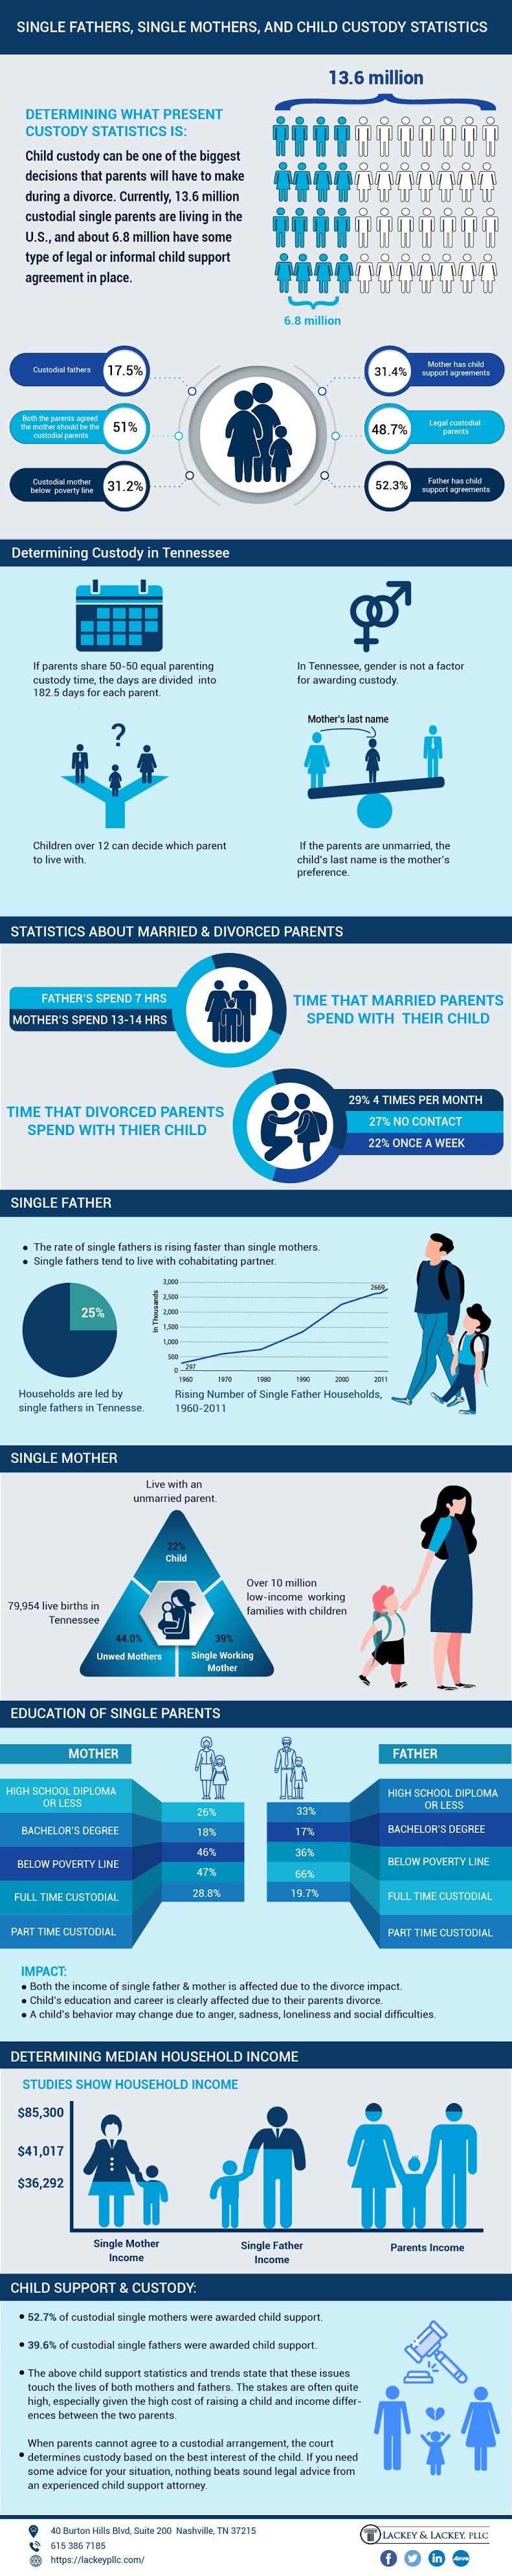  ensamstående föräldrar infographic